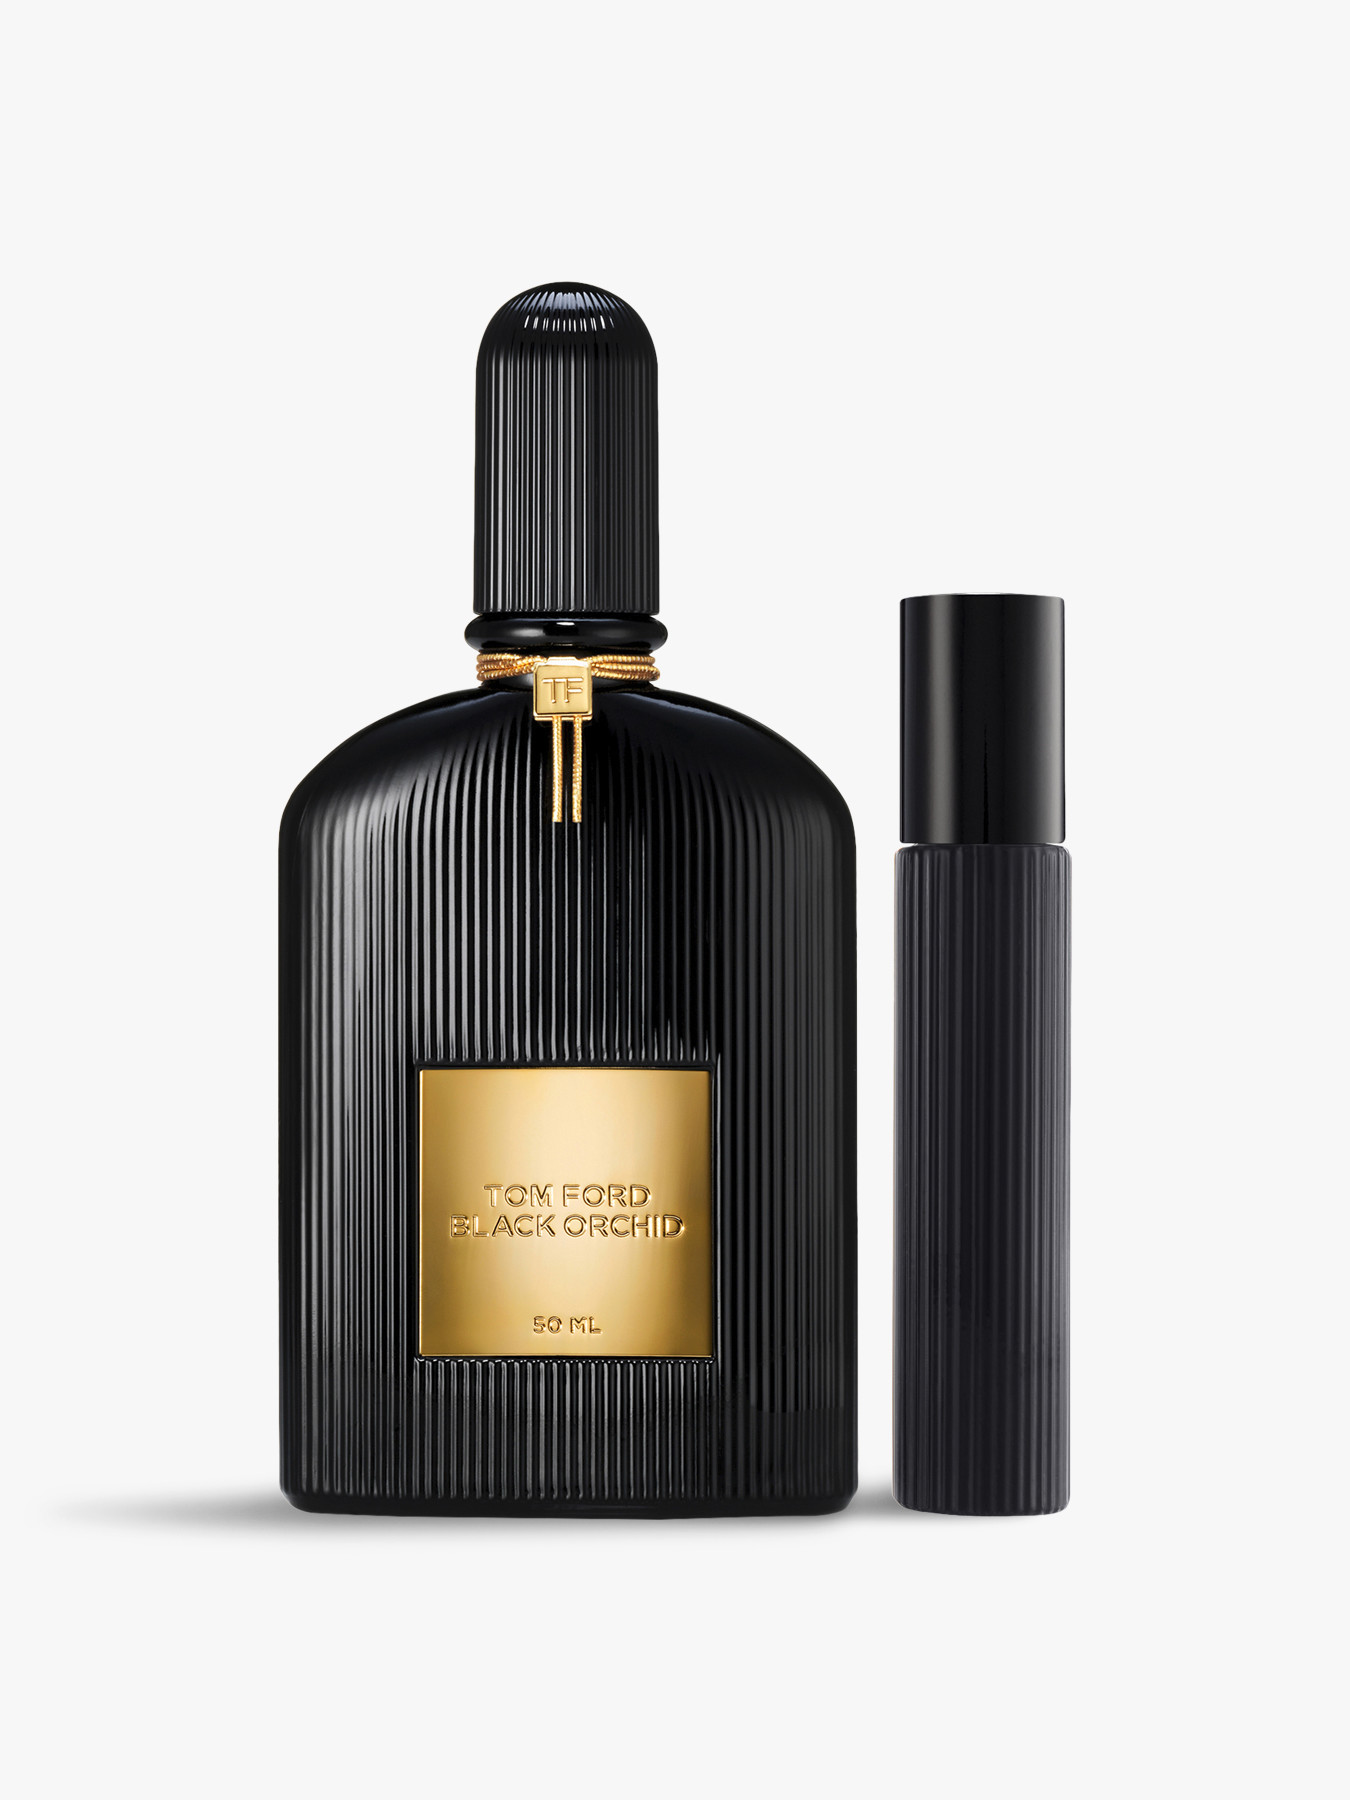 Tom Ford Signature Collection Black Orchid Eau de Parfum Gift Set ...